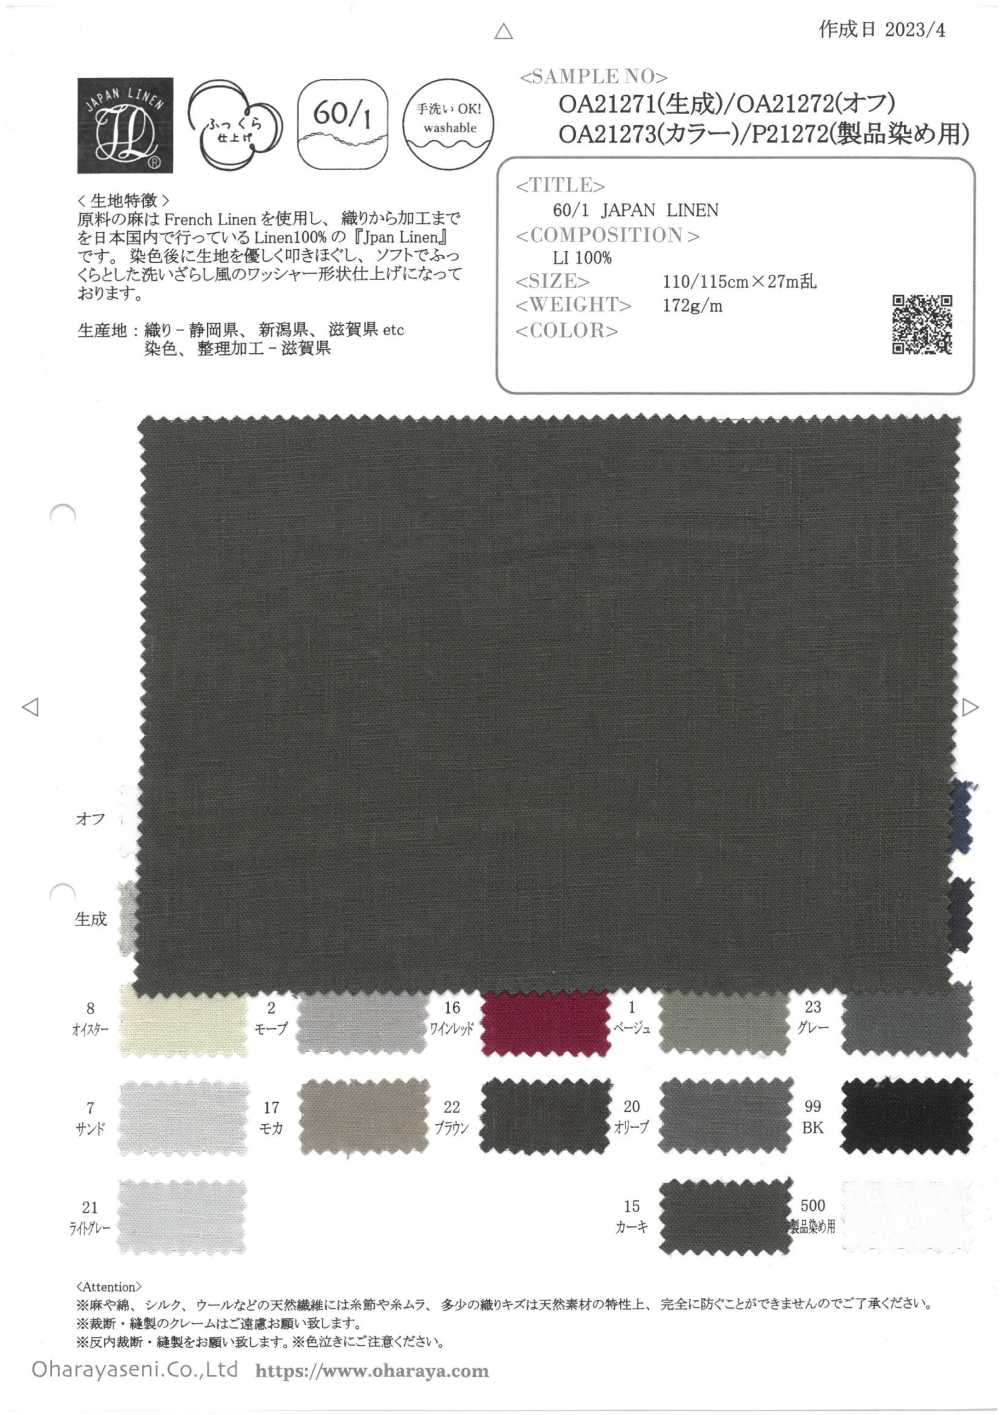 OA21273 60/1・JAPAN LINEN (カラー)[生地] 小原屋繊維